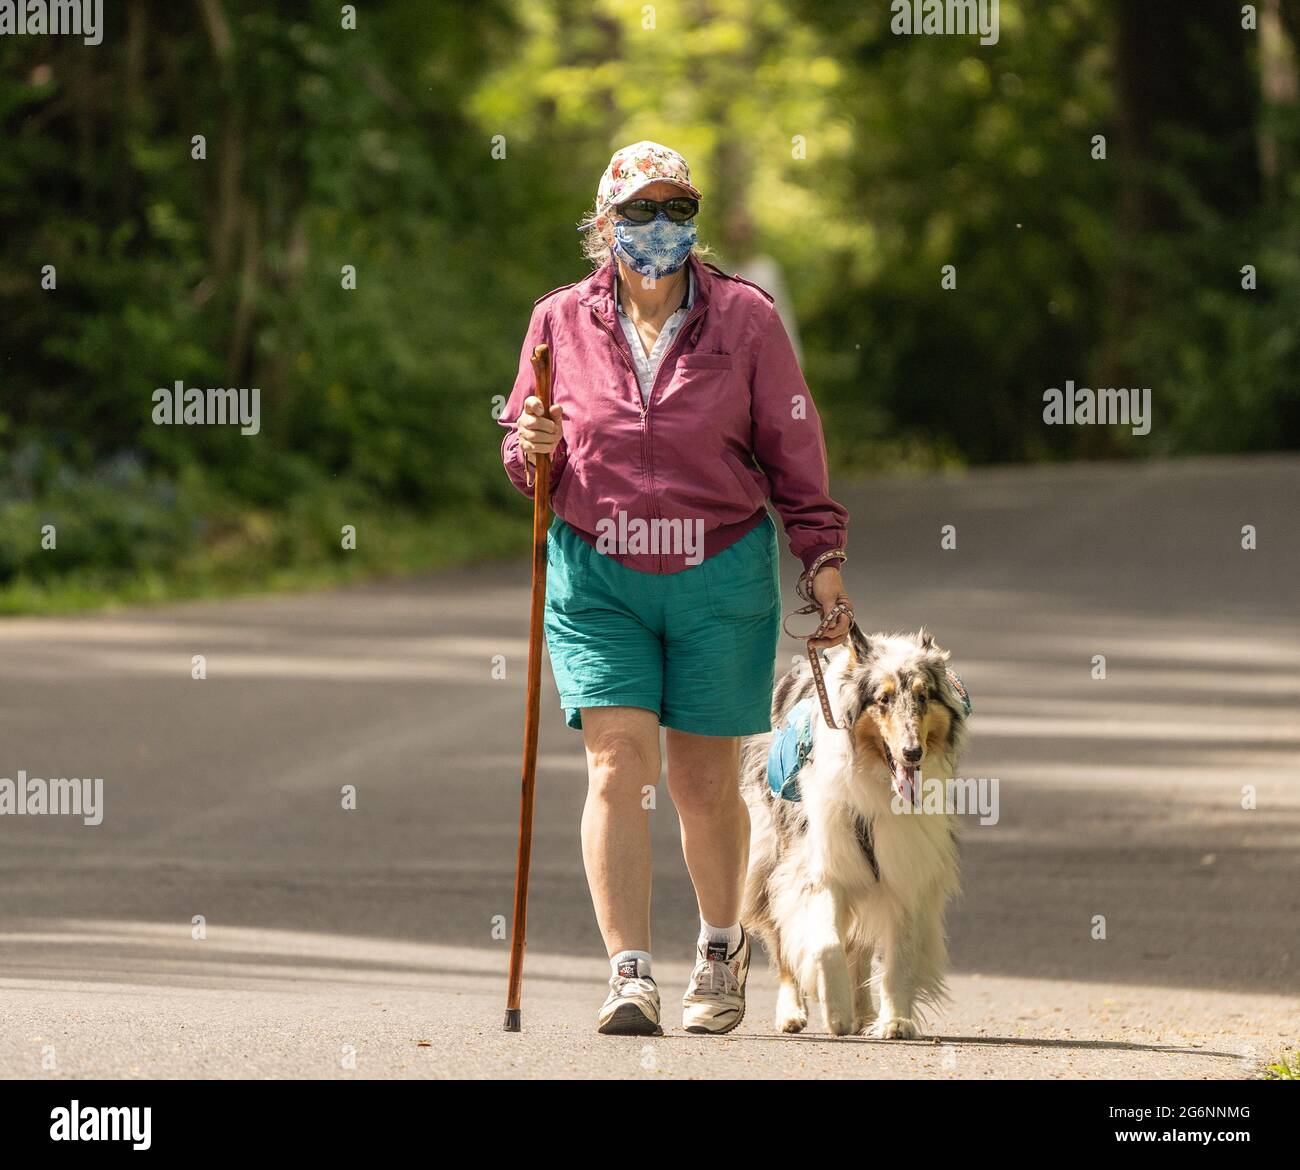 Condado de Berks, Pensilvania - 17 de mayo de 2021: Las mujeres mayores que usan máscaras caminan servicio perro en el parque. Foto de stock